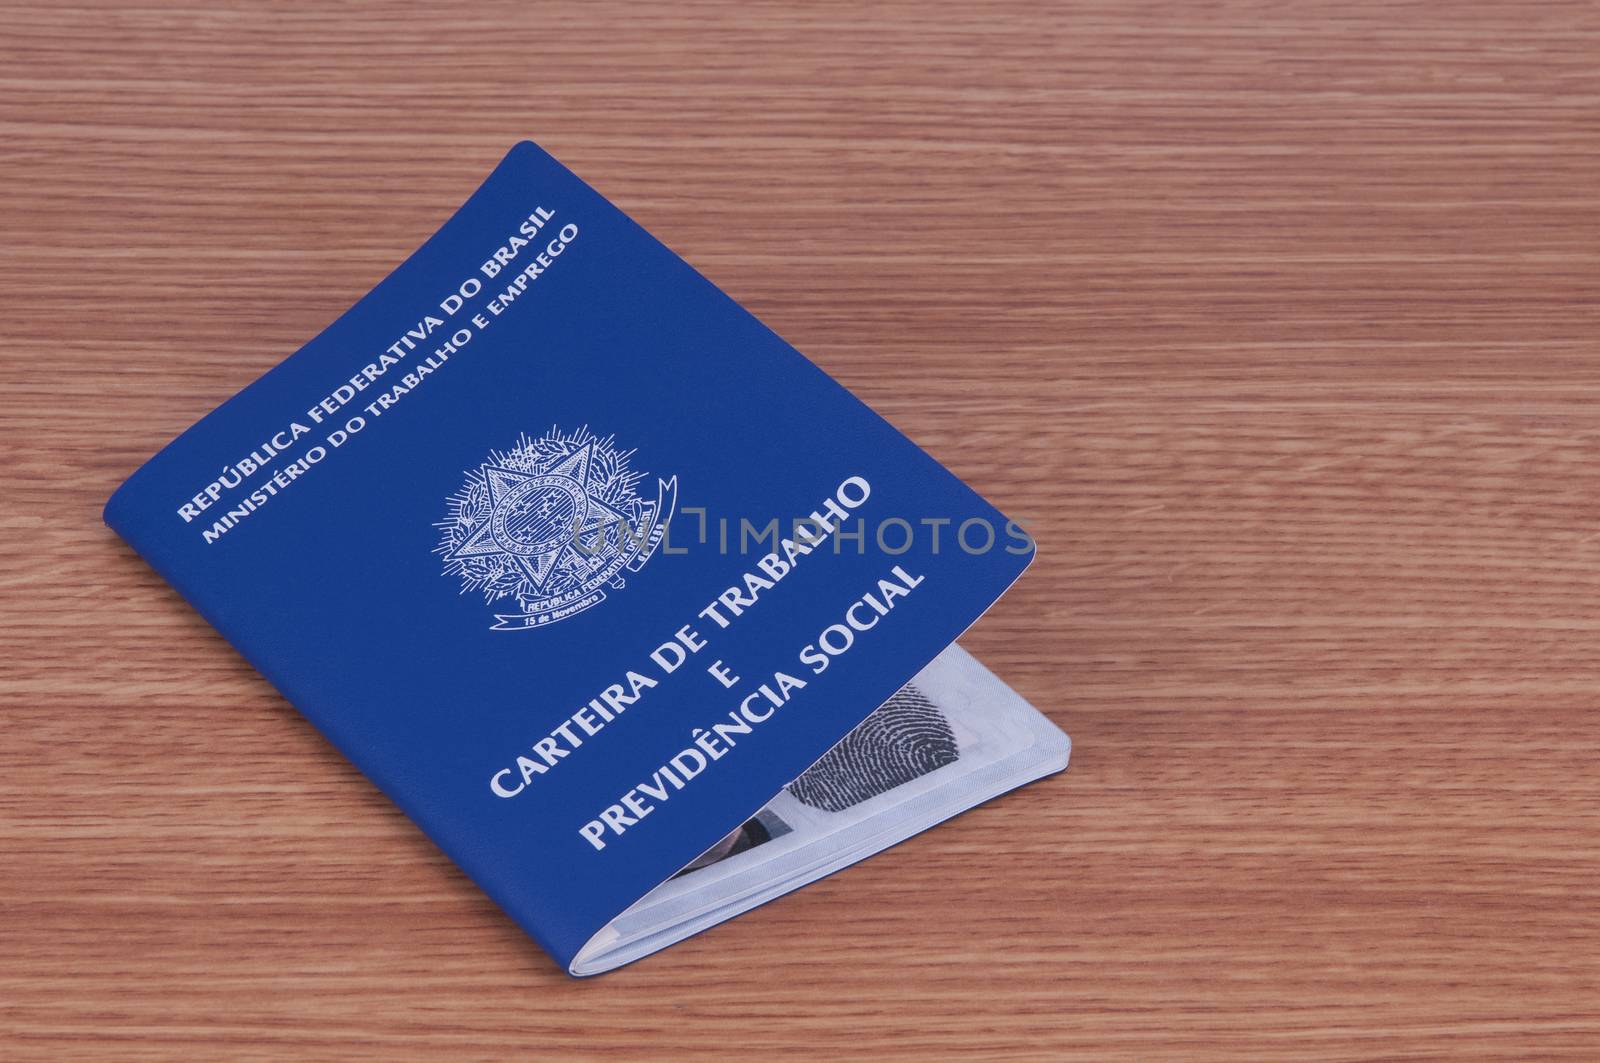 Brazilian work document and social security document (carteira de trabalho)